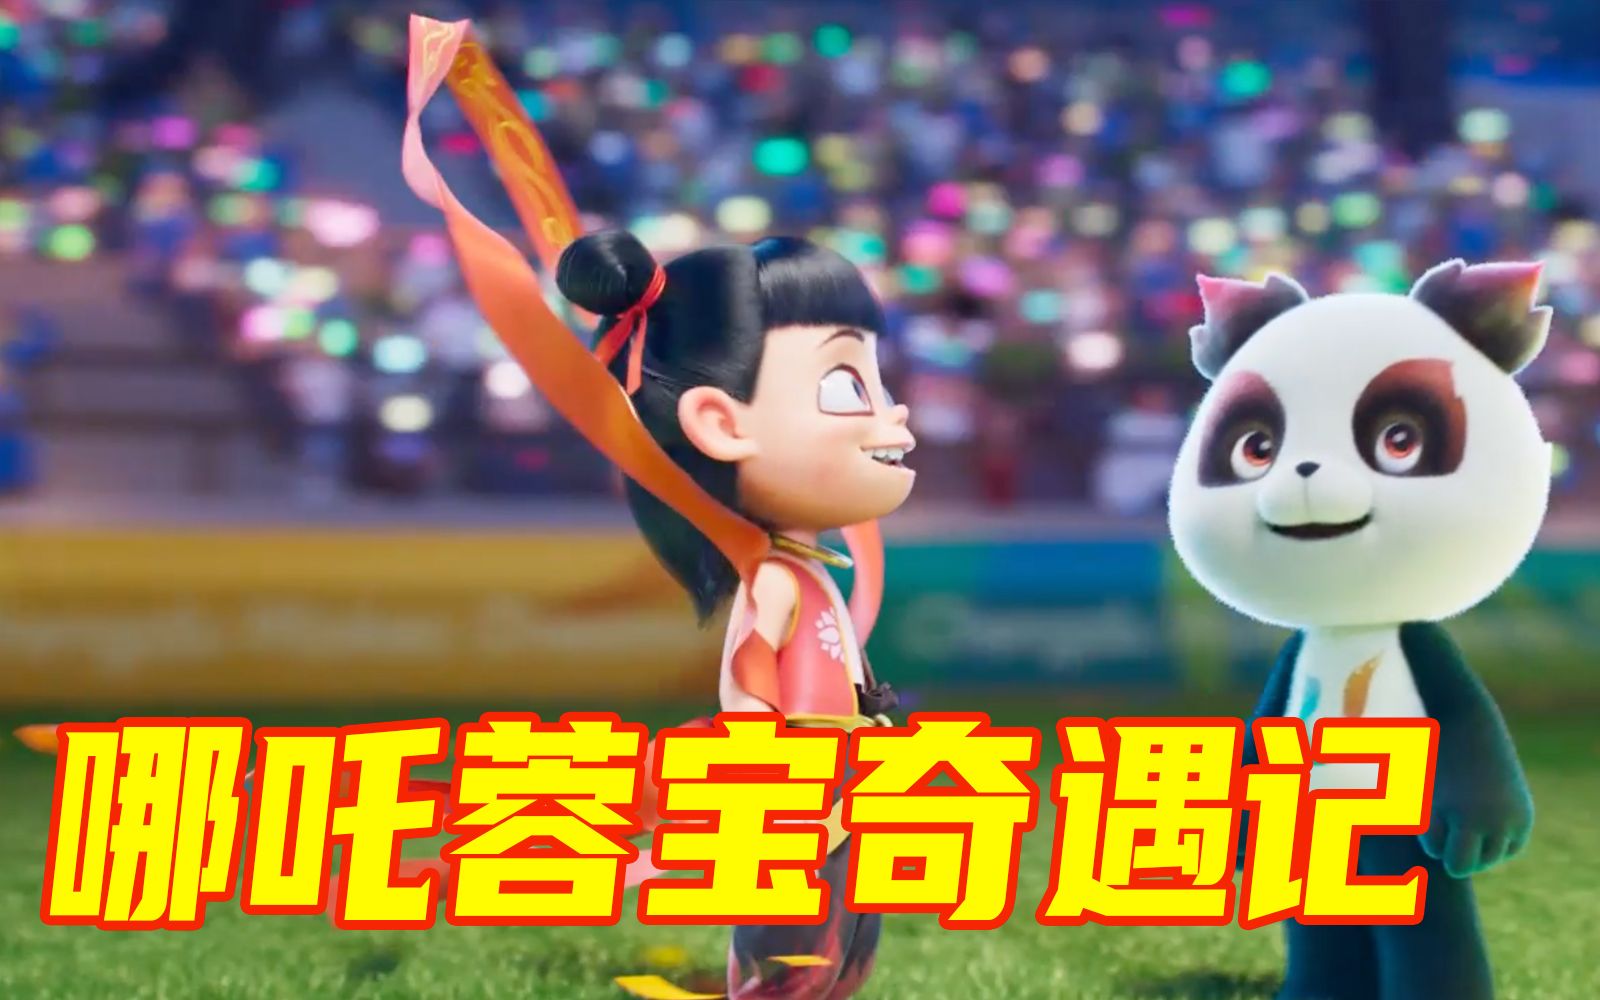 成都大运会3D动画宣传片《哪吒蓉宝奇遇记》